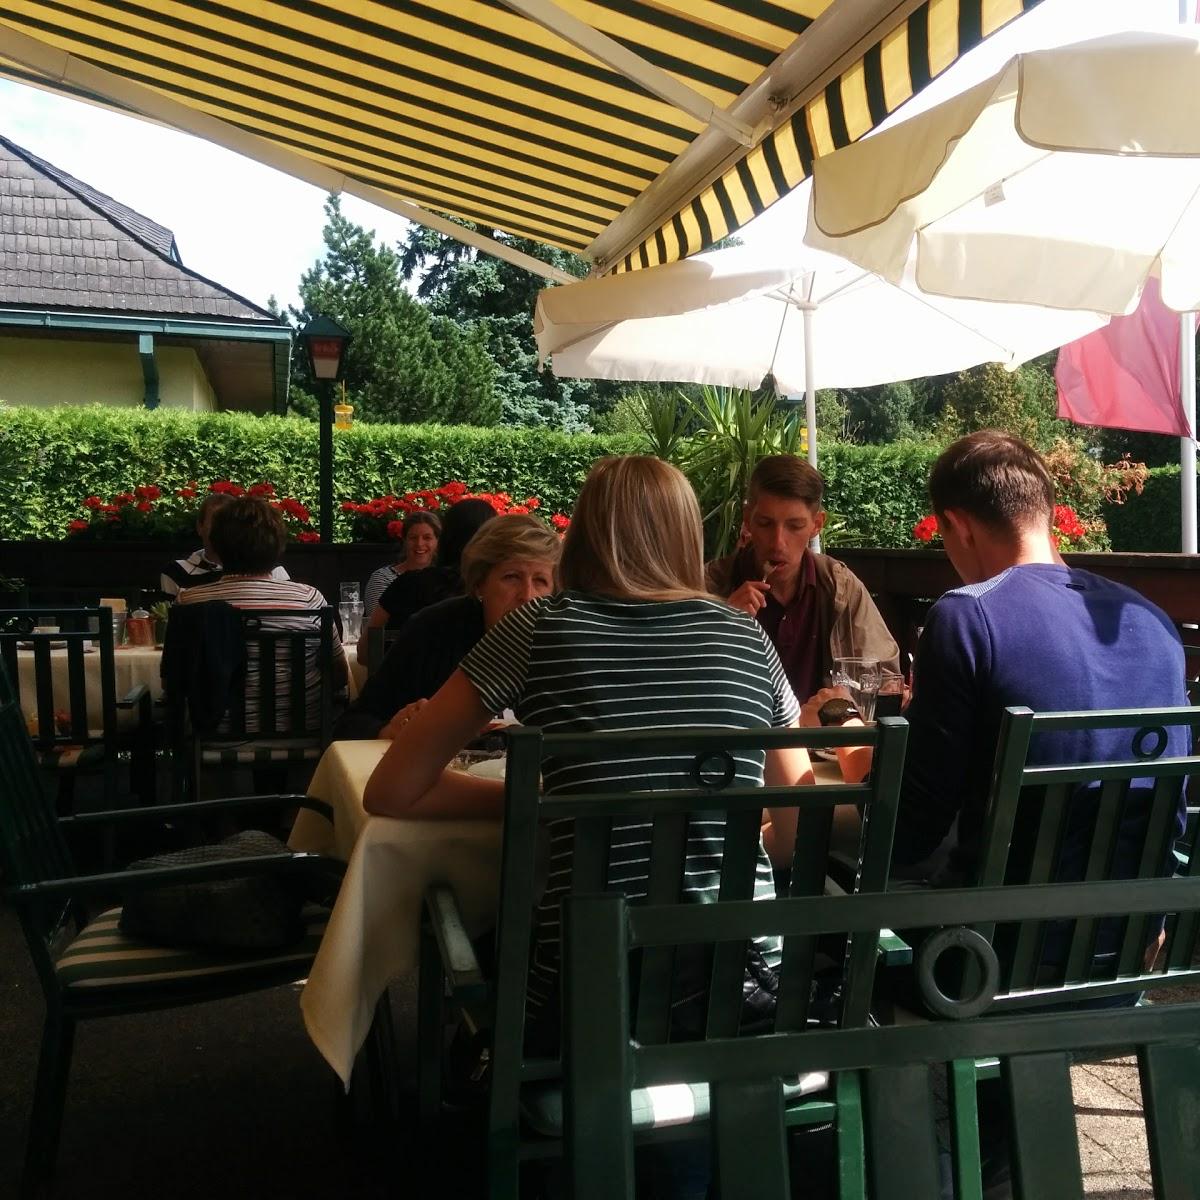 Restaurant "Gasthof und Brauerei Linko" in Traisen